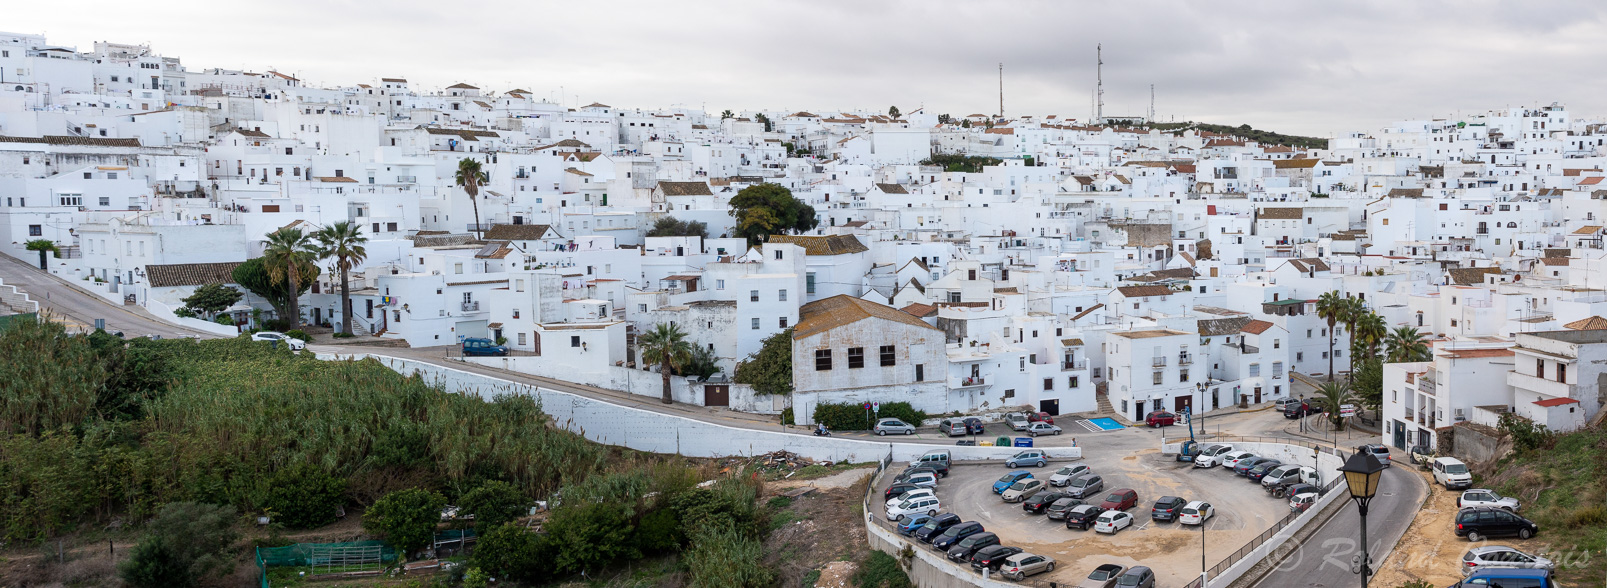 Vejer de la Frontera est un village de charme, constitué de maisons blanches resserrées les unes contre les autres sur une colline.